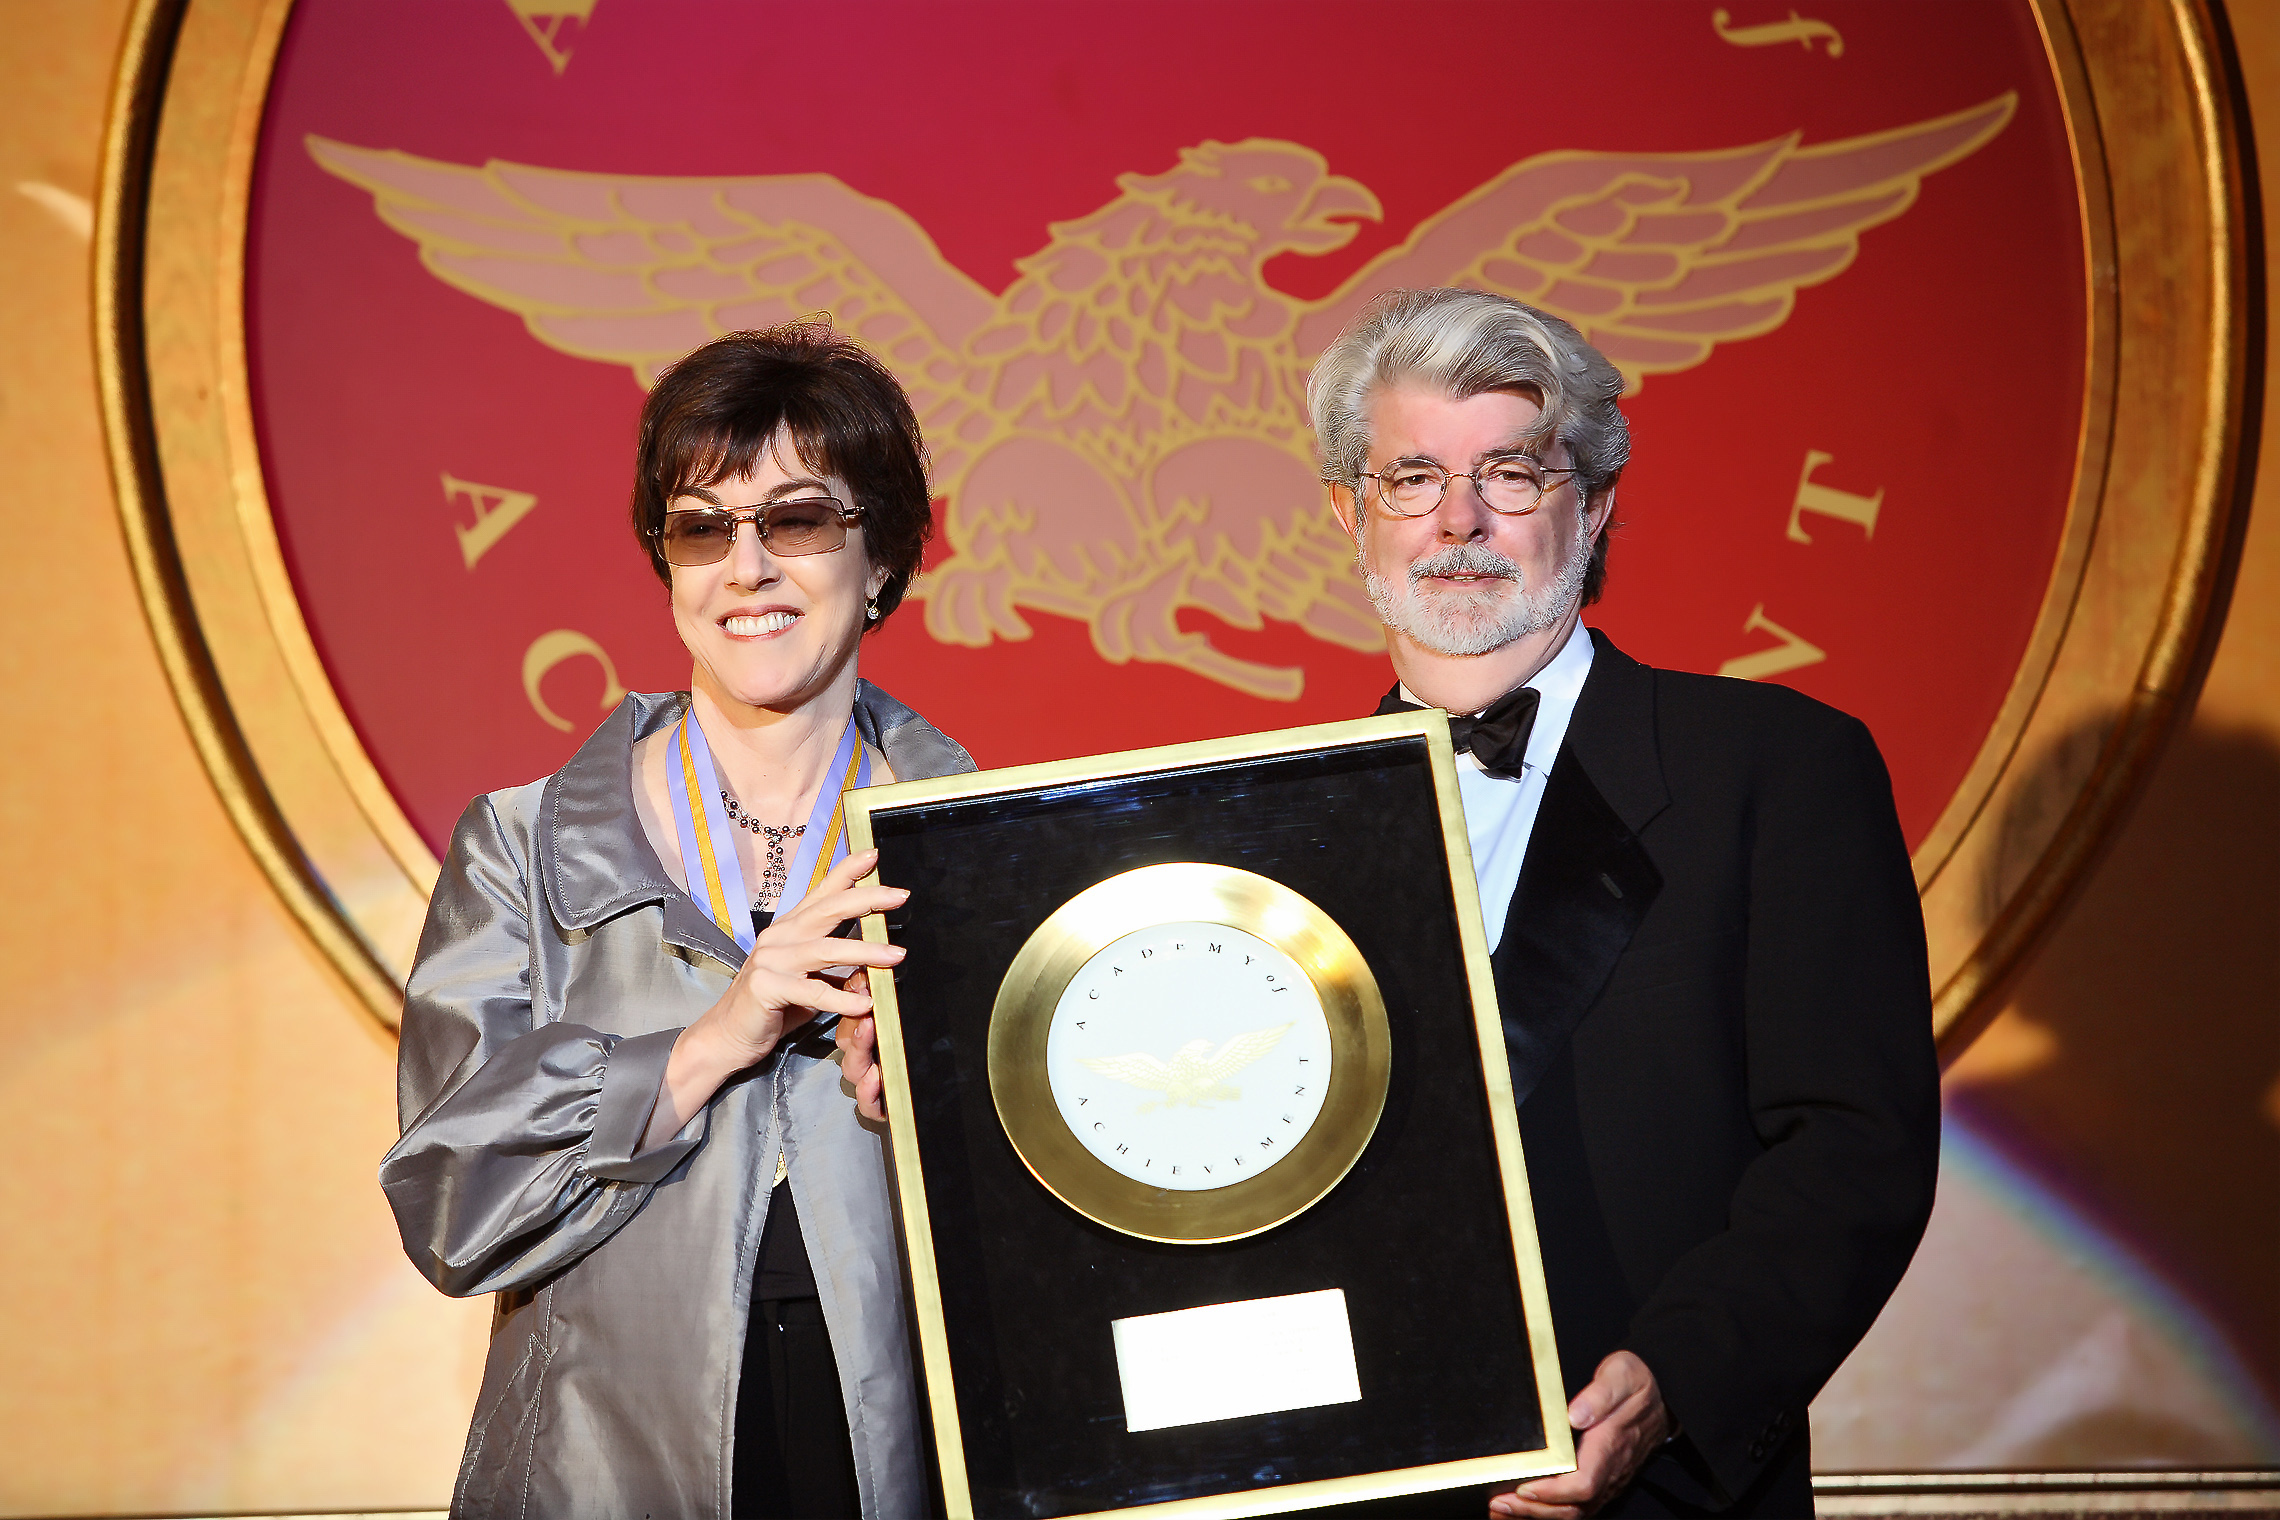  George Lucas, miembro del Consejo de Premios y cineasta, entrega a Nora Ephron el Premio Placa de Oro en la Cumbre Internacional de Logros de 2007 en Washington, D. C.